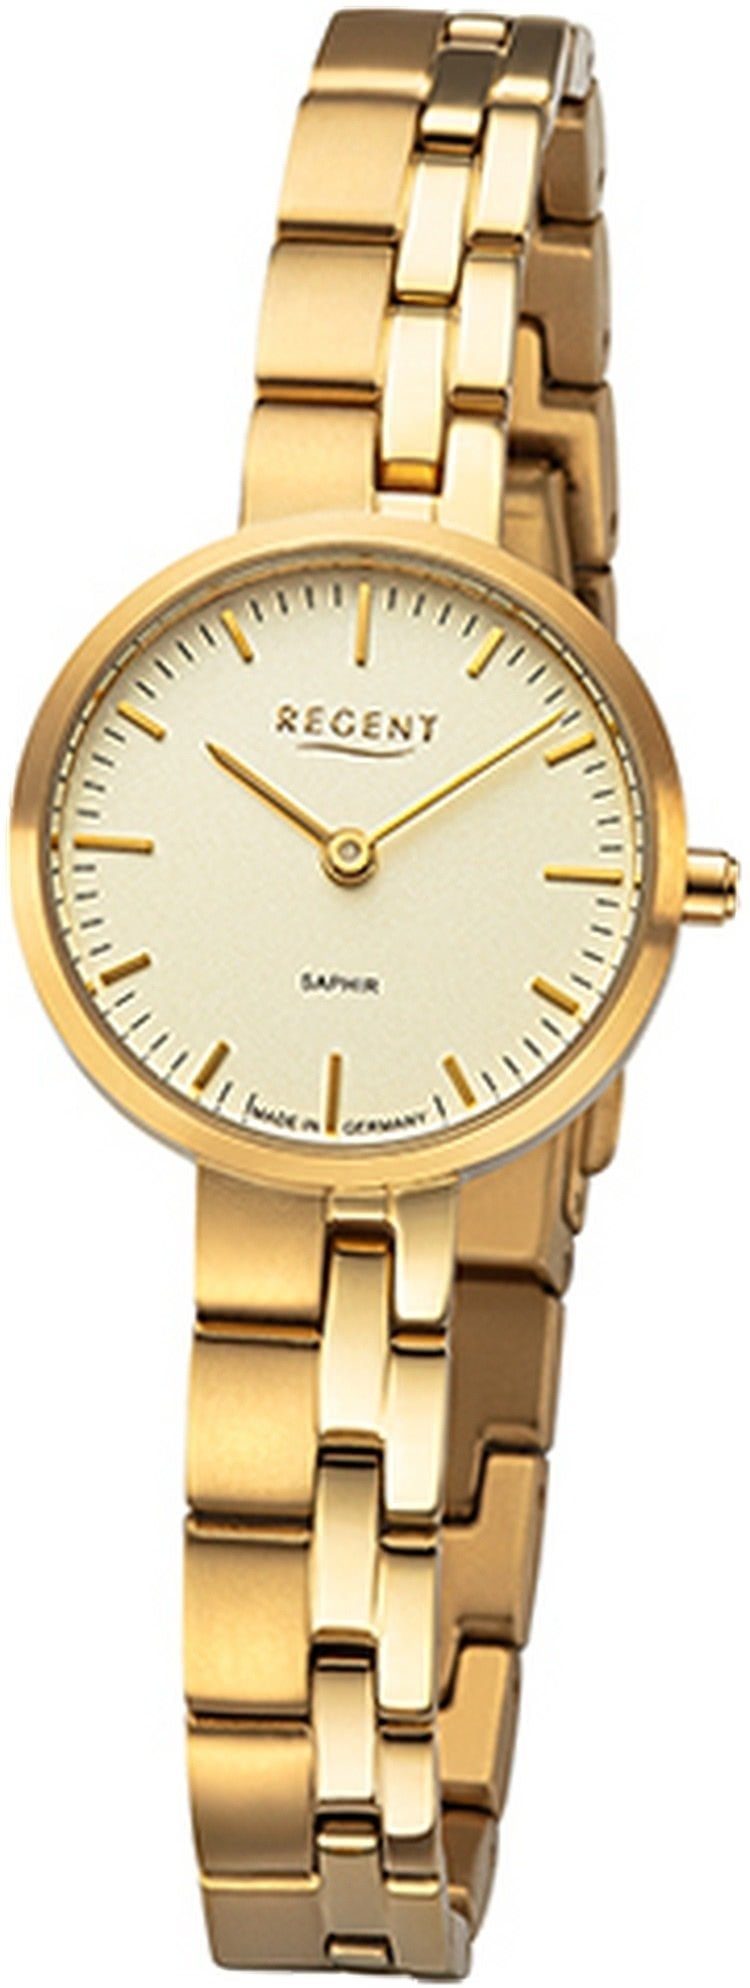 Regent Damen gold, rundes Quarzuhr klein 26mm) Armbanduhr (ca. Gehäuse, Analog, Regent Titanbandarmband Damenuhr